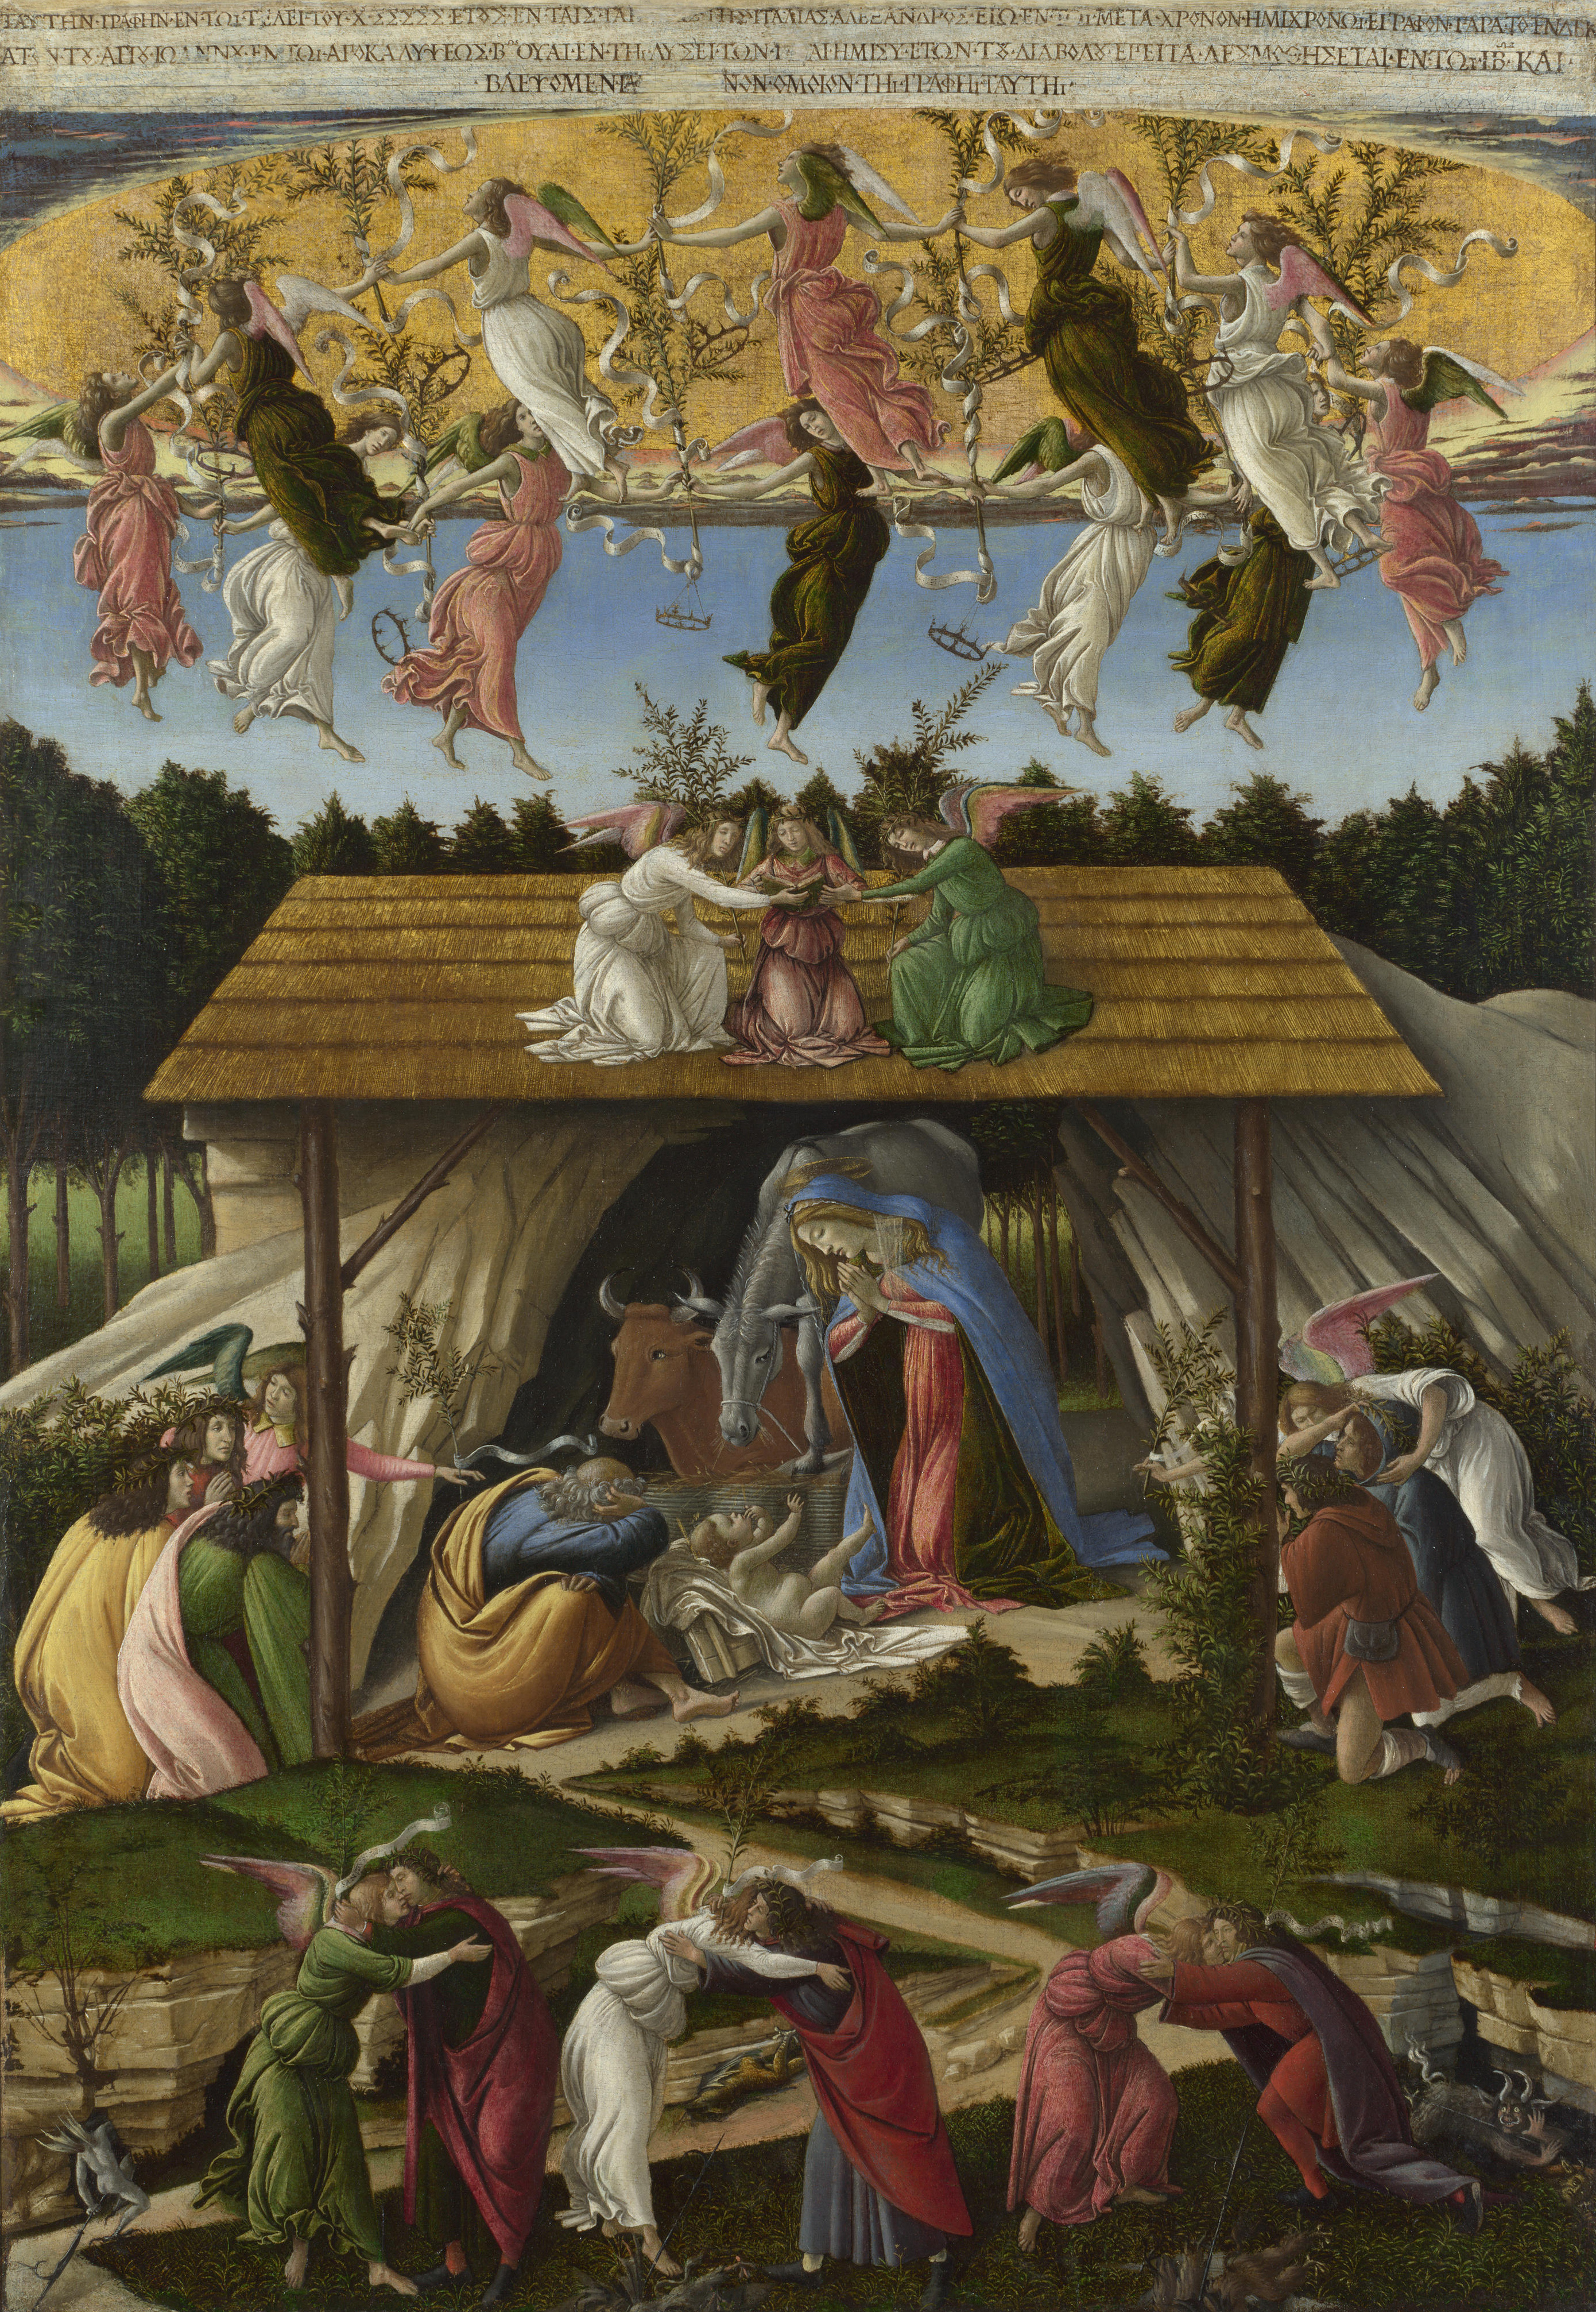 Natività Mistica by Sandro Botticelli - 1501 - 108,6 x 74,9 cm 